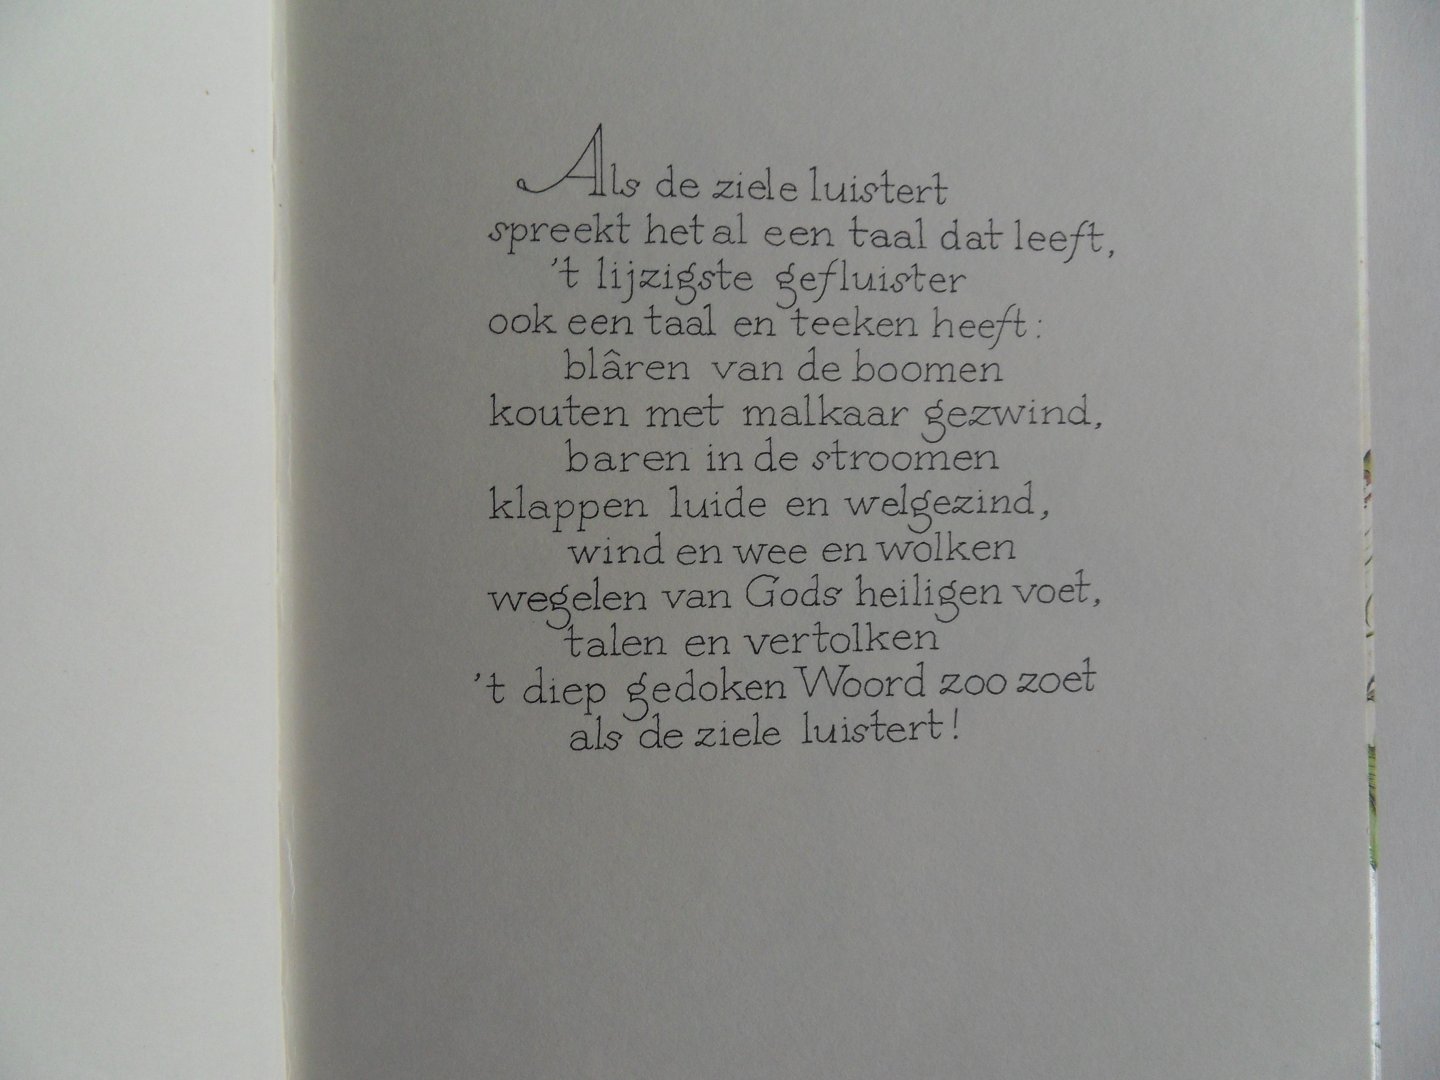 Gezelle, Guido (gedichten); Wiegman, Christine (samenstelling en verluchtiging); Worm, Piet (kalligrafie). - Hoe Stille is `t. [ GENUMMERD LUXE exemplaar - 30 / 500 ].